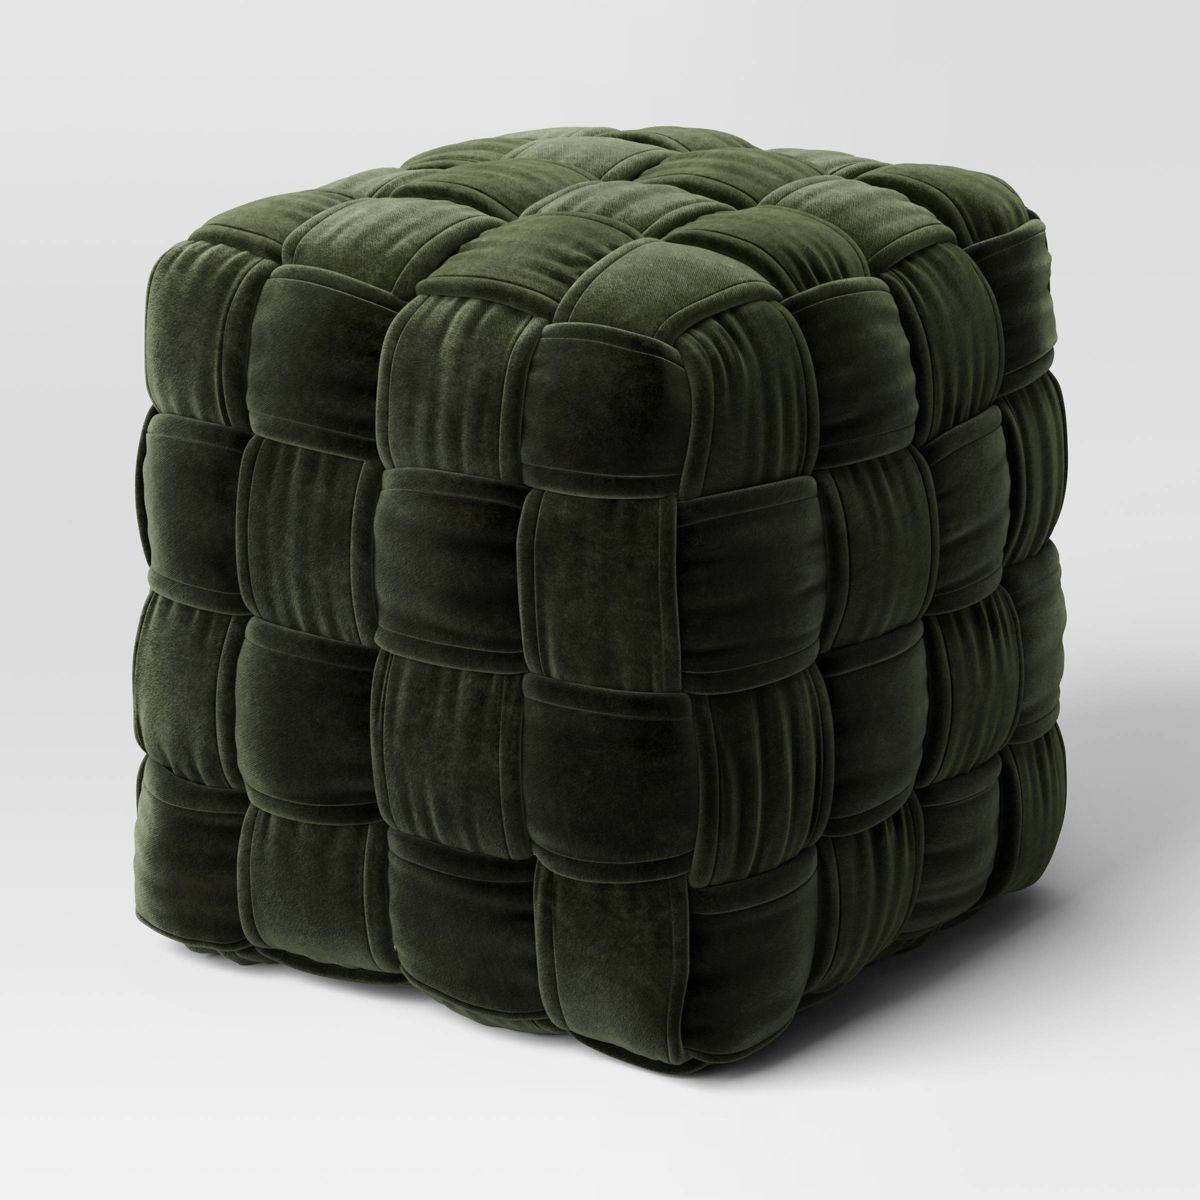 Square Woven Pouf Ottoman Green Velvet - Threshold™ | Target